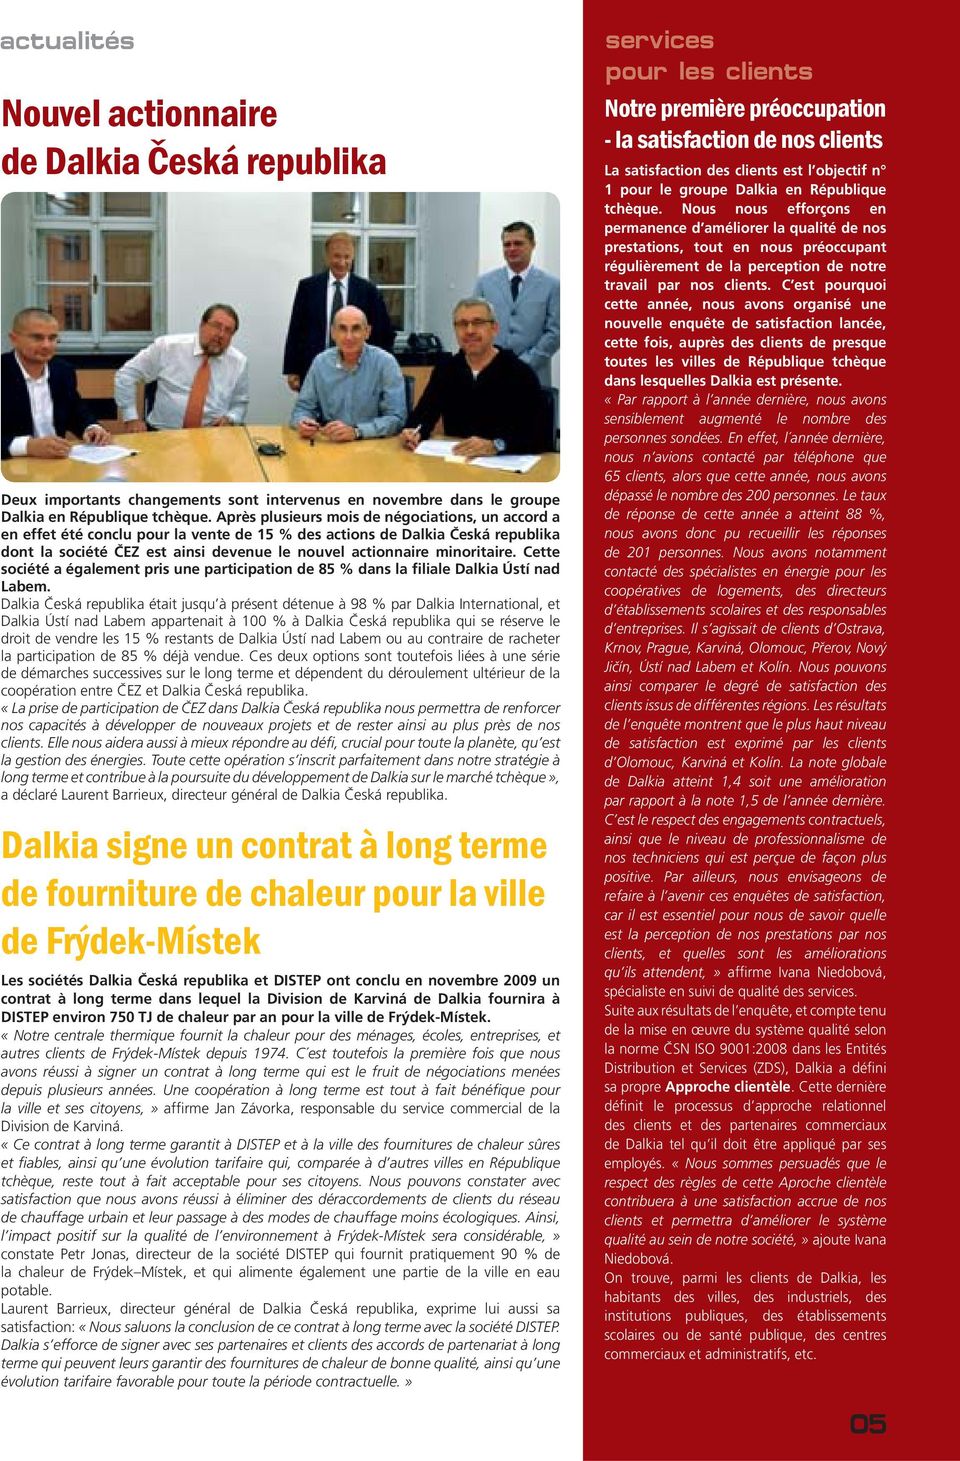 minoritaire. Cette société a également pris une participation de 85 % dans la filiale Dalkia Ústí nad Labem.